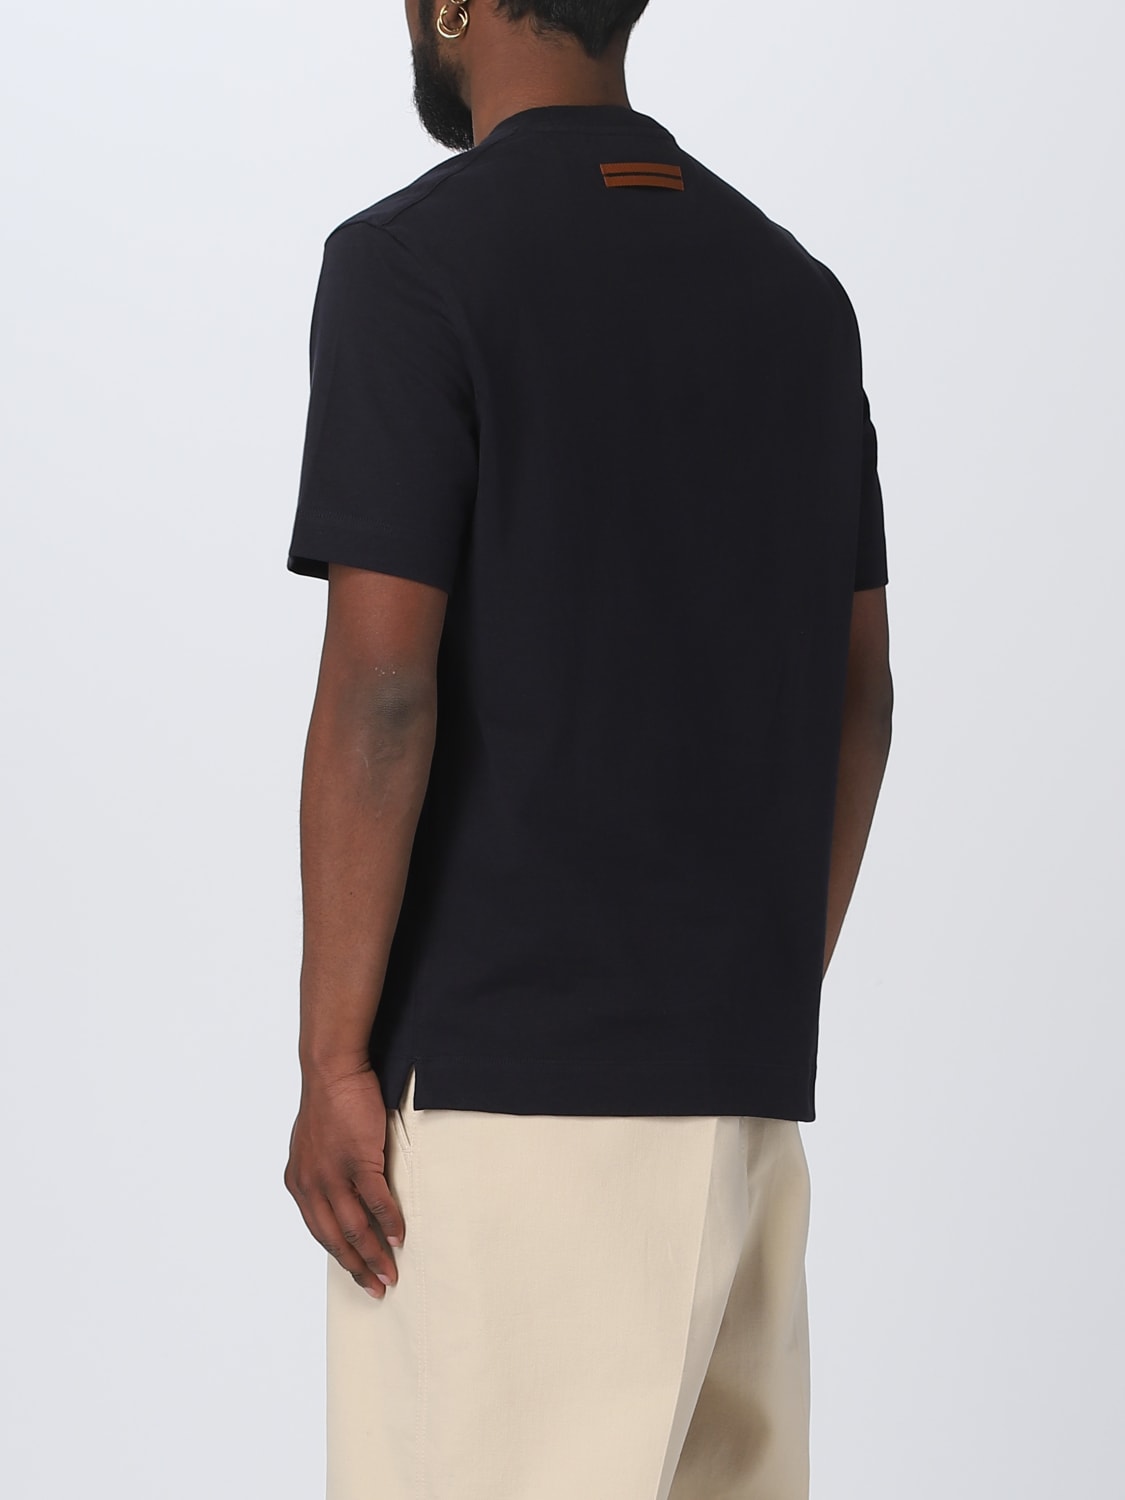 Louis Vuitton inside out t shirt mens grey medium